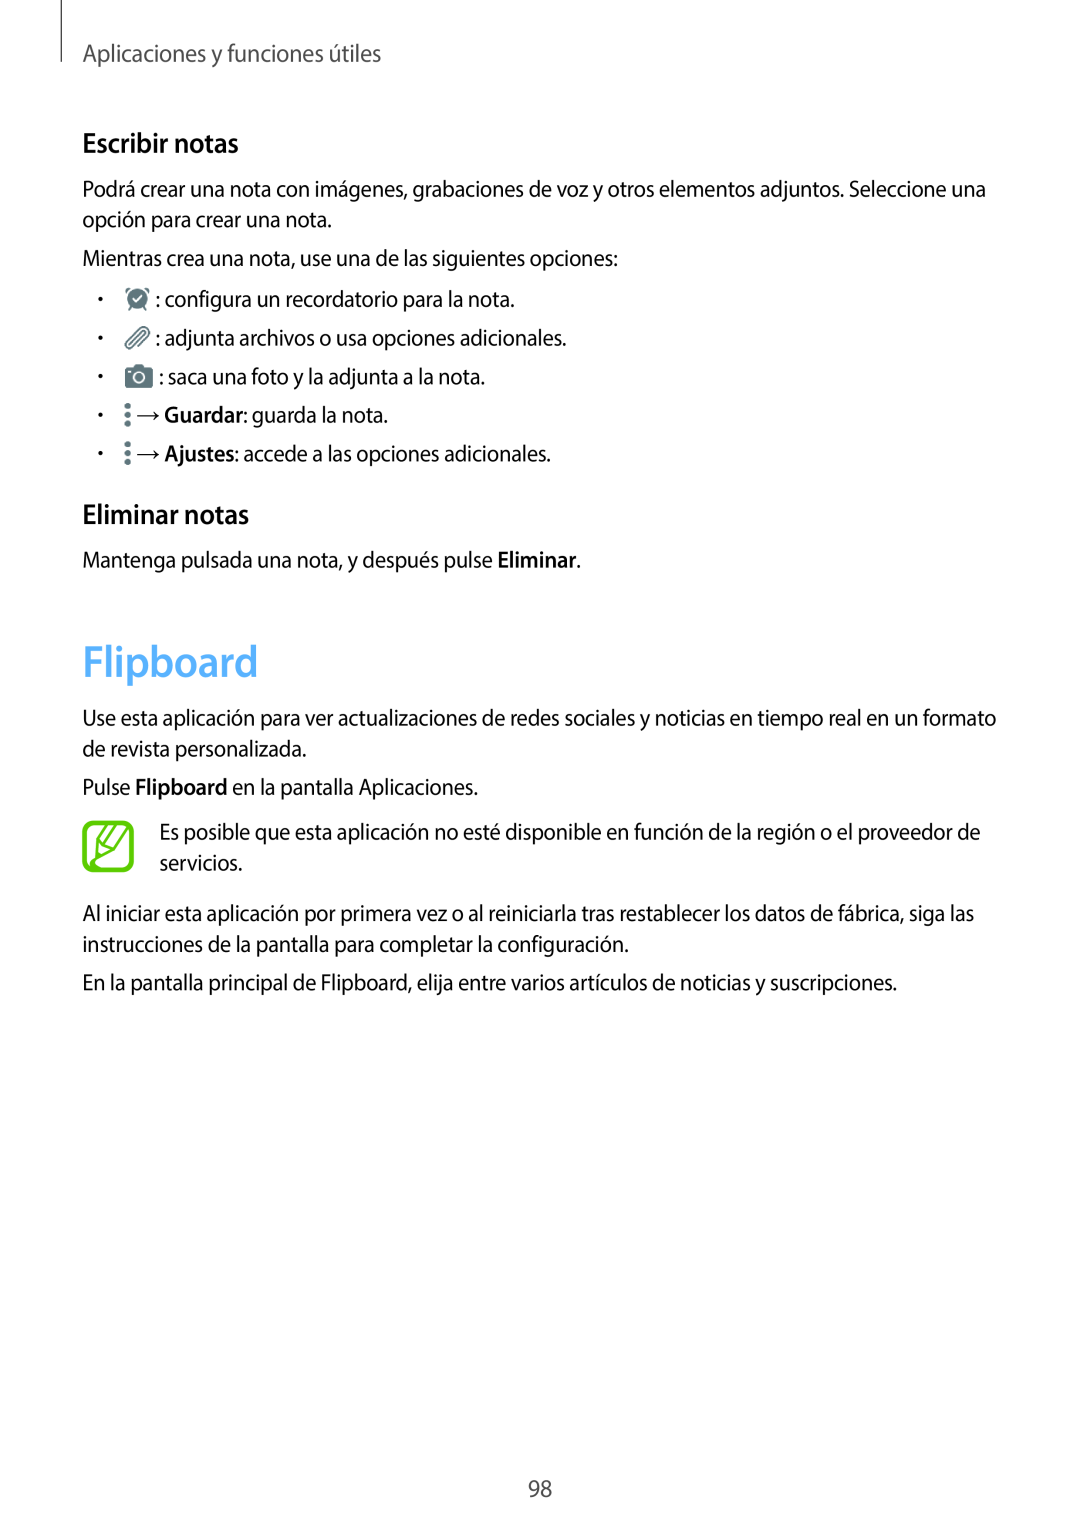 Samsung SM-T800NZWATPH, SM-T800NHAAATO manual Flipboard, Escribir notas, Eliminar notas, Aplicaciones y funciones útiles 